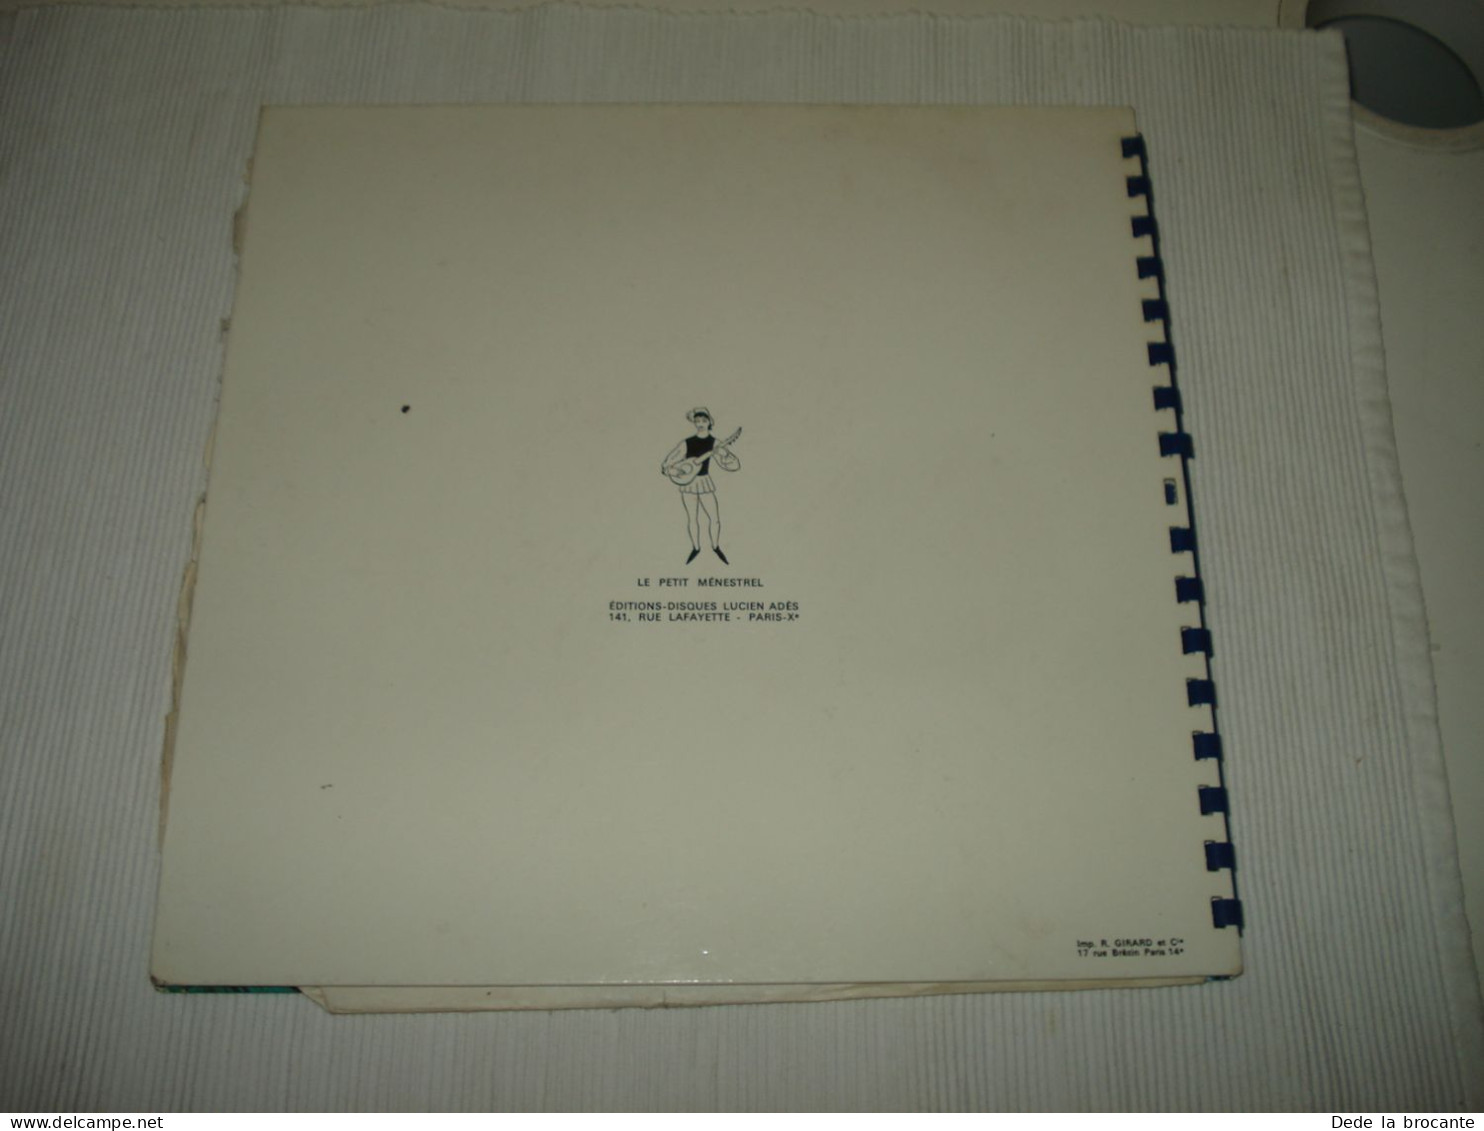 B14 / Livre-disque Disney Merlin L'enchanteur 33T - 10"- ALB 74 - FR 19??  NM/VG - Spezialformate